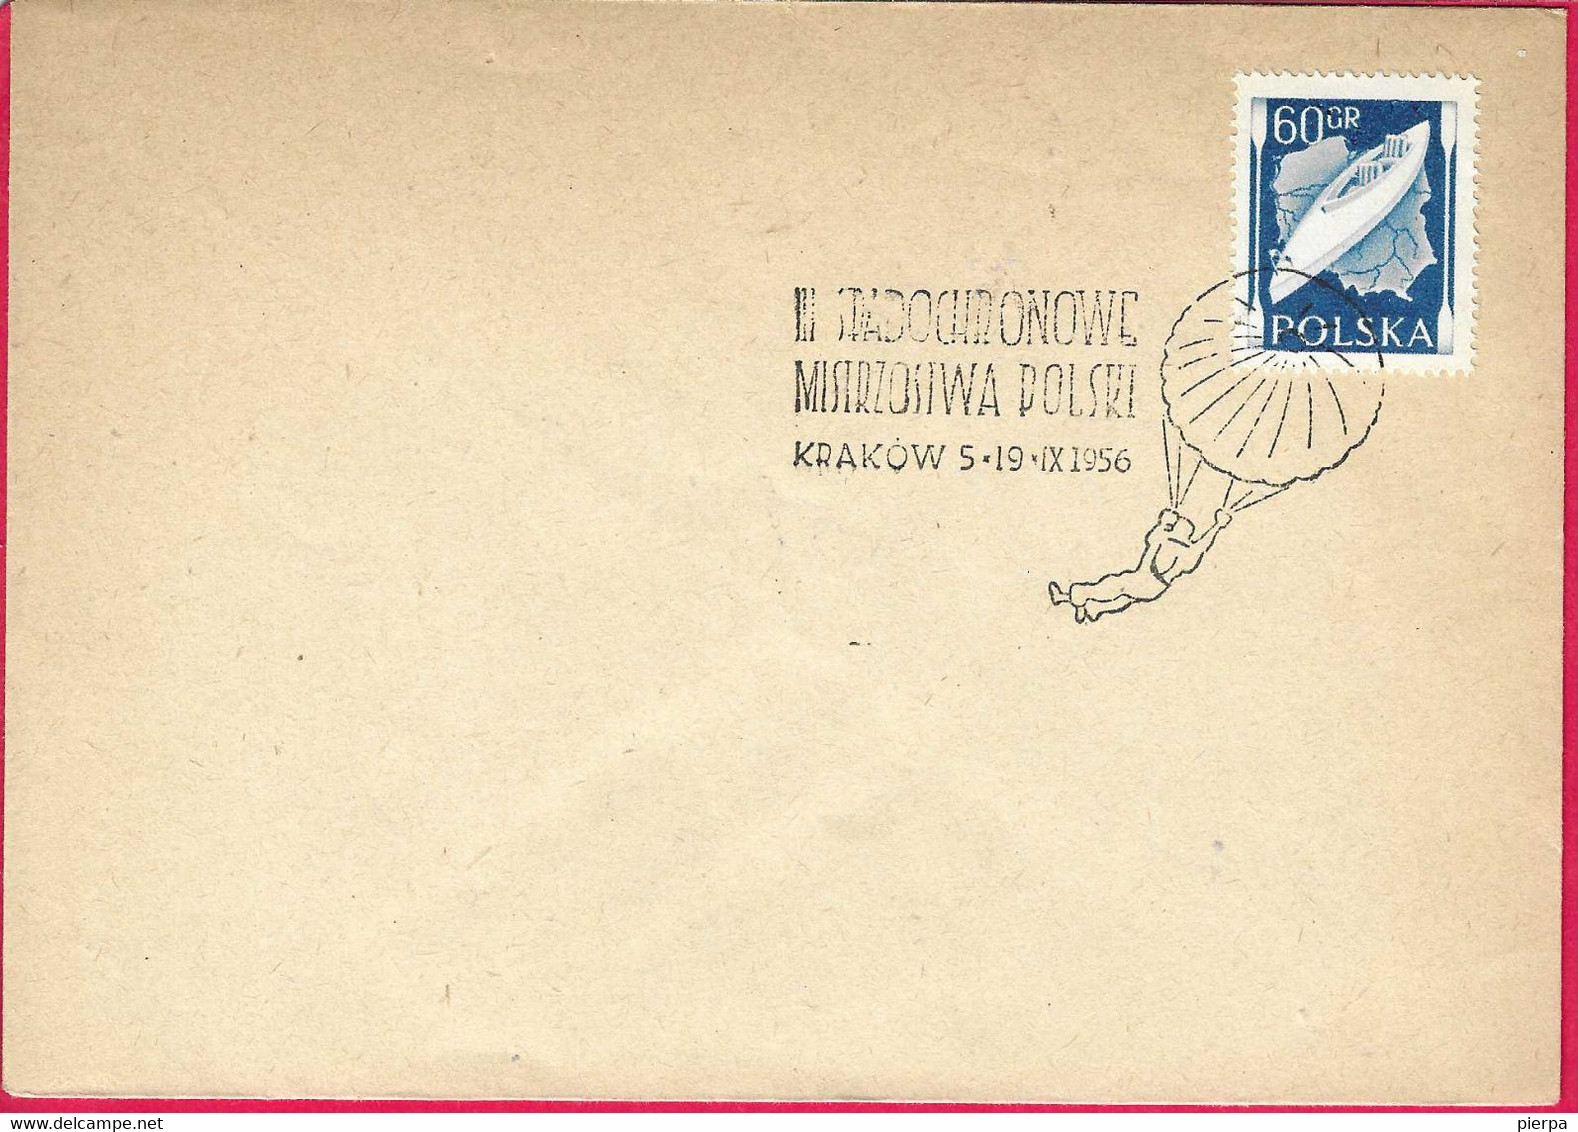 POLONIA - ANNULLO SPECIALE PARACADUTISMO - KRAKOW * 5.19..1956* SU BUSTA GRANDE - Parachutting